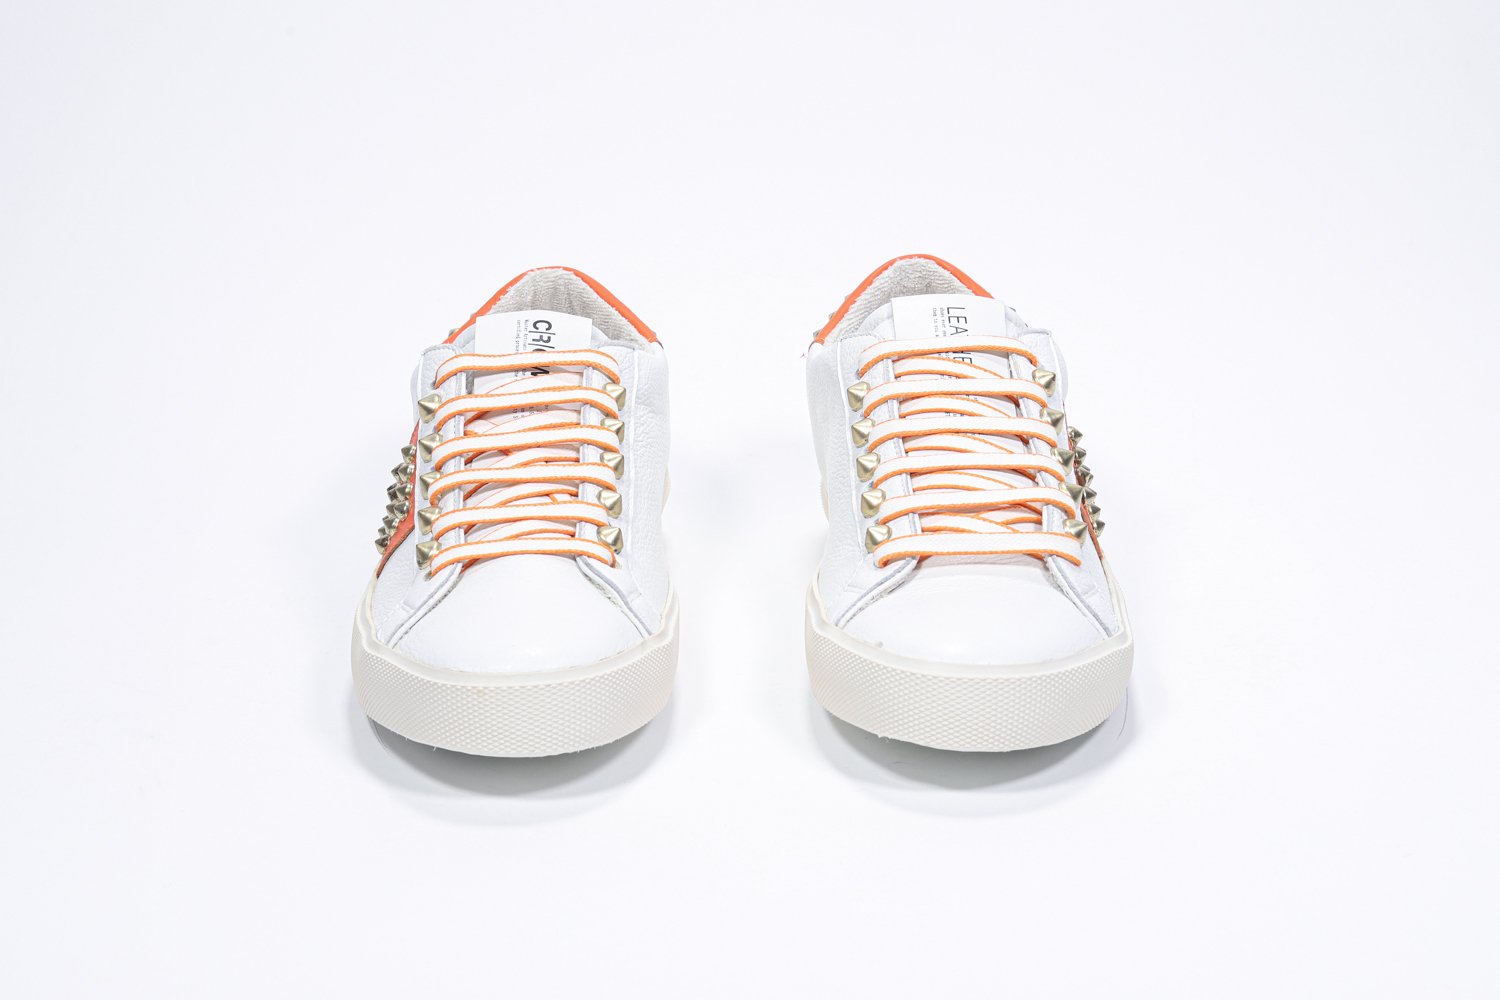 Vue de face de la chaussure blanche et orange sneaker. Tige en cuir avec clous et semelle en caoutchouc vintage.